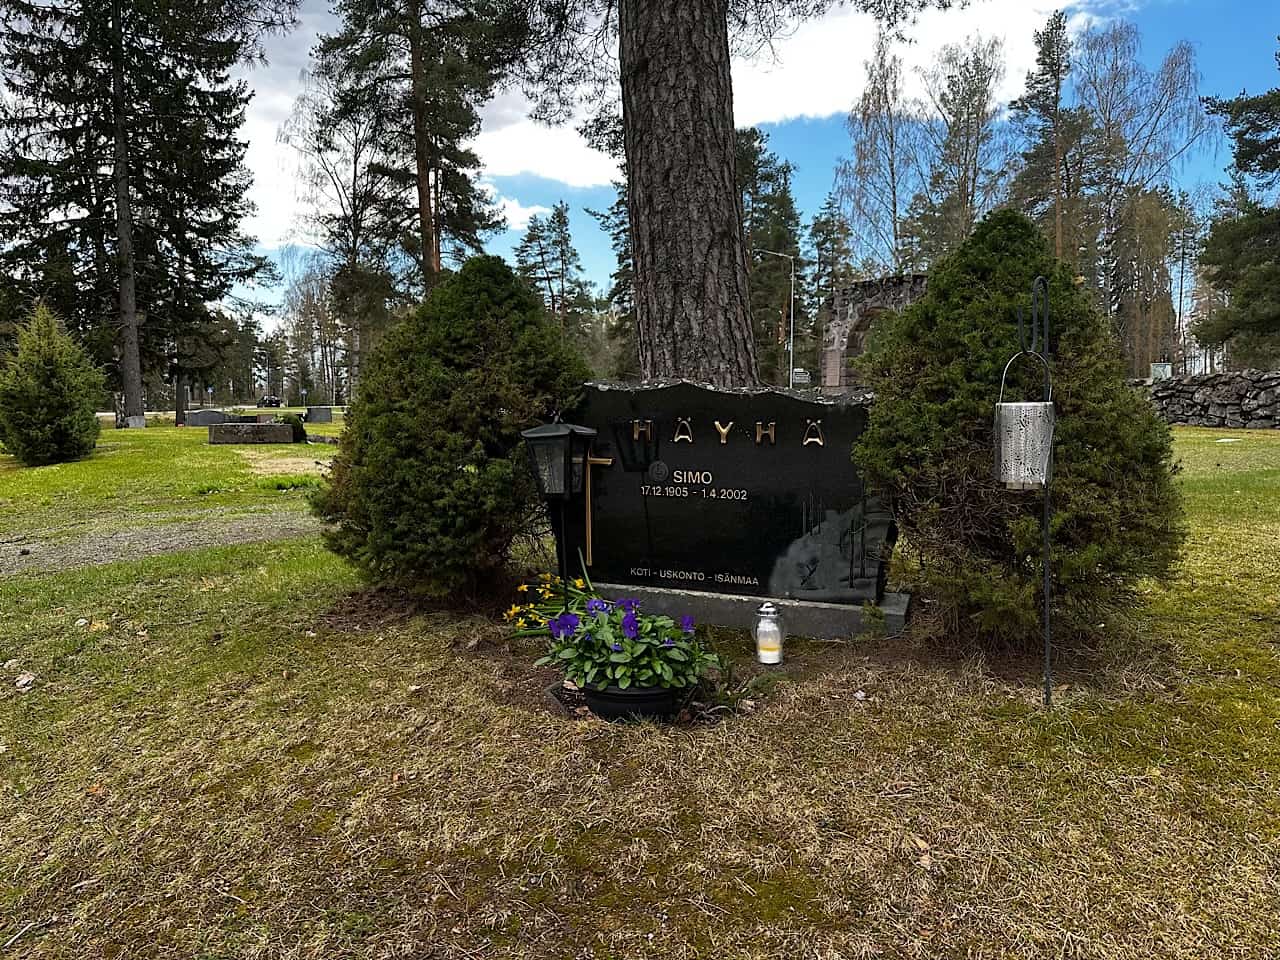 Simo Häyhä gravsted, Finsk finskytte Finlandskrigen, Erik B. Jørgensen under Finland på langs - til fods